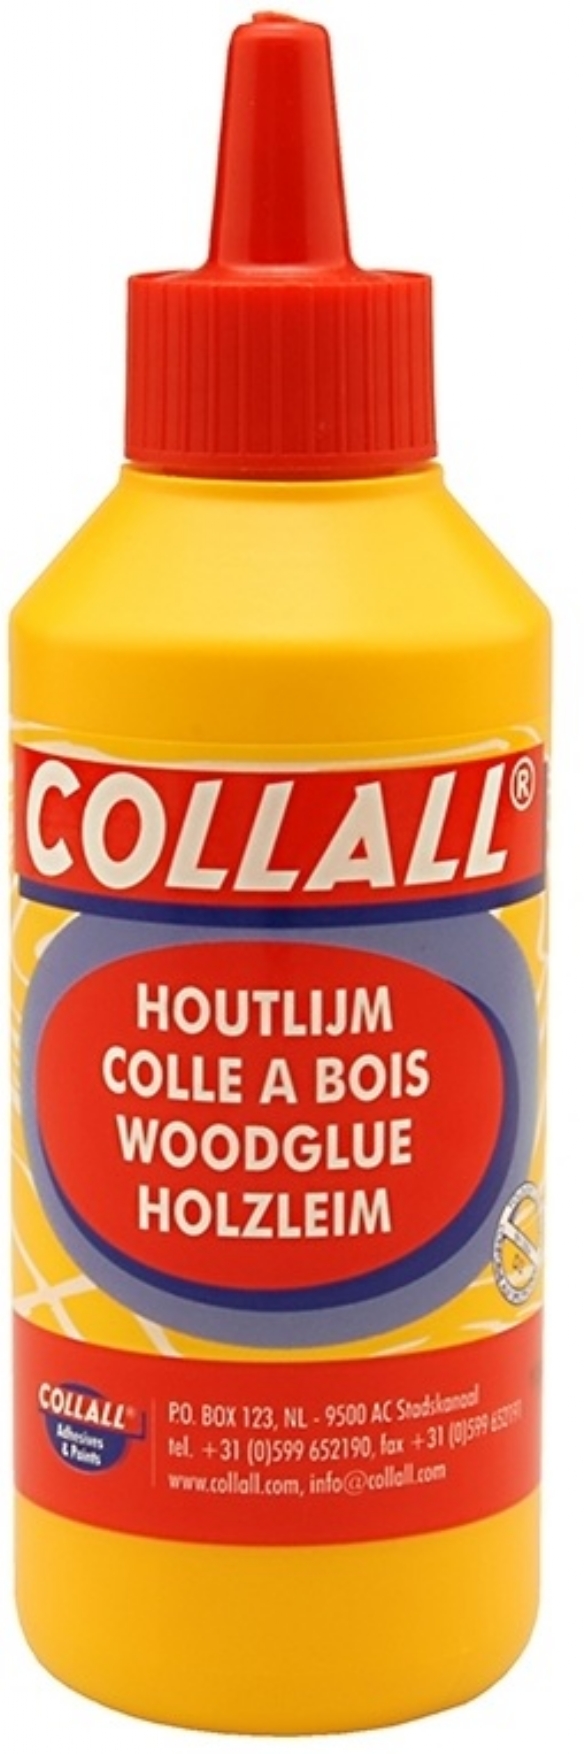 Collall D3 houtlijm, 250 gram kopen?